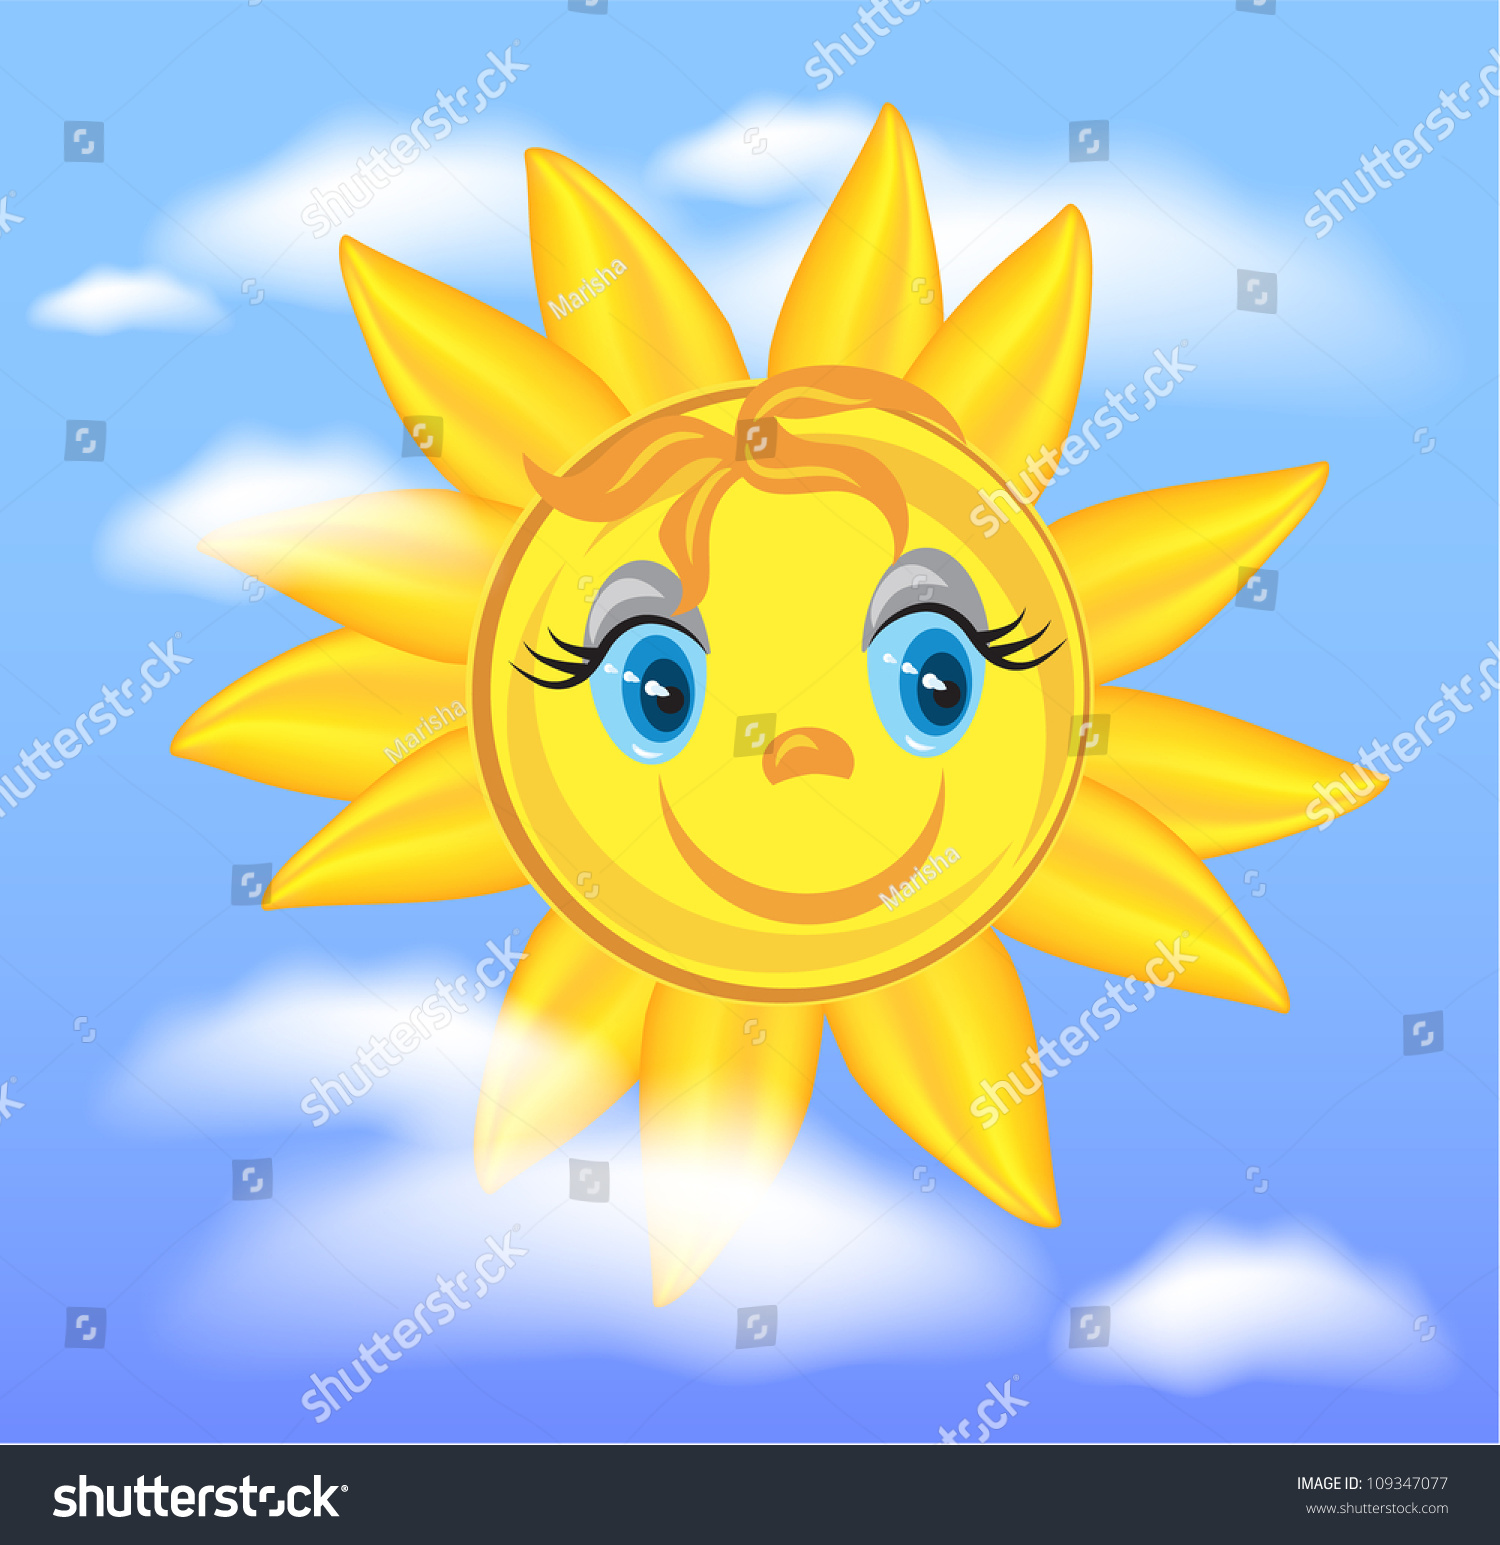 Солнышко лучистое на небе для детей